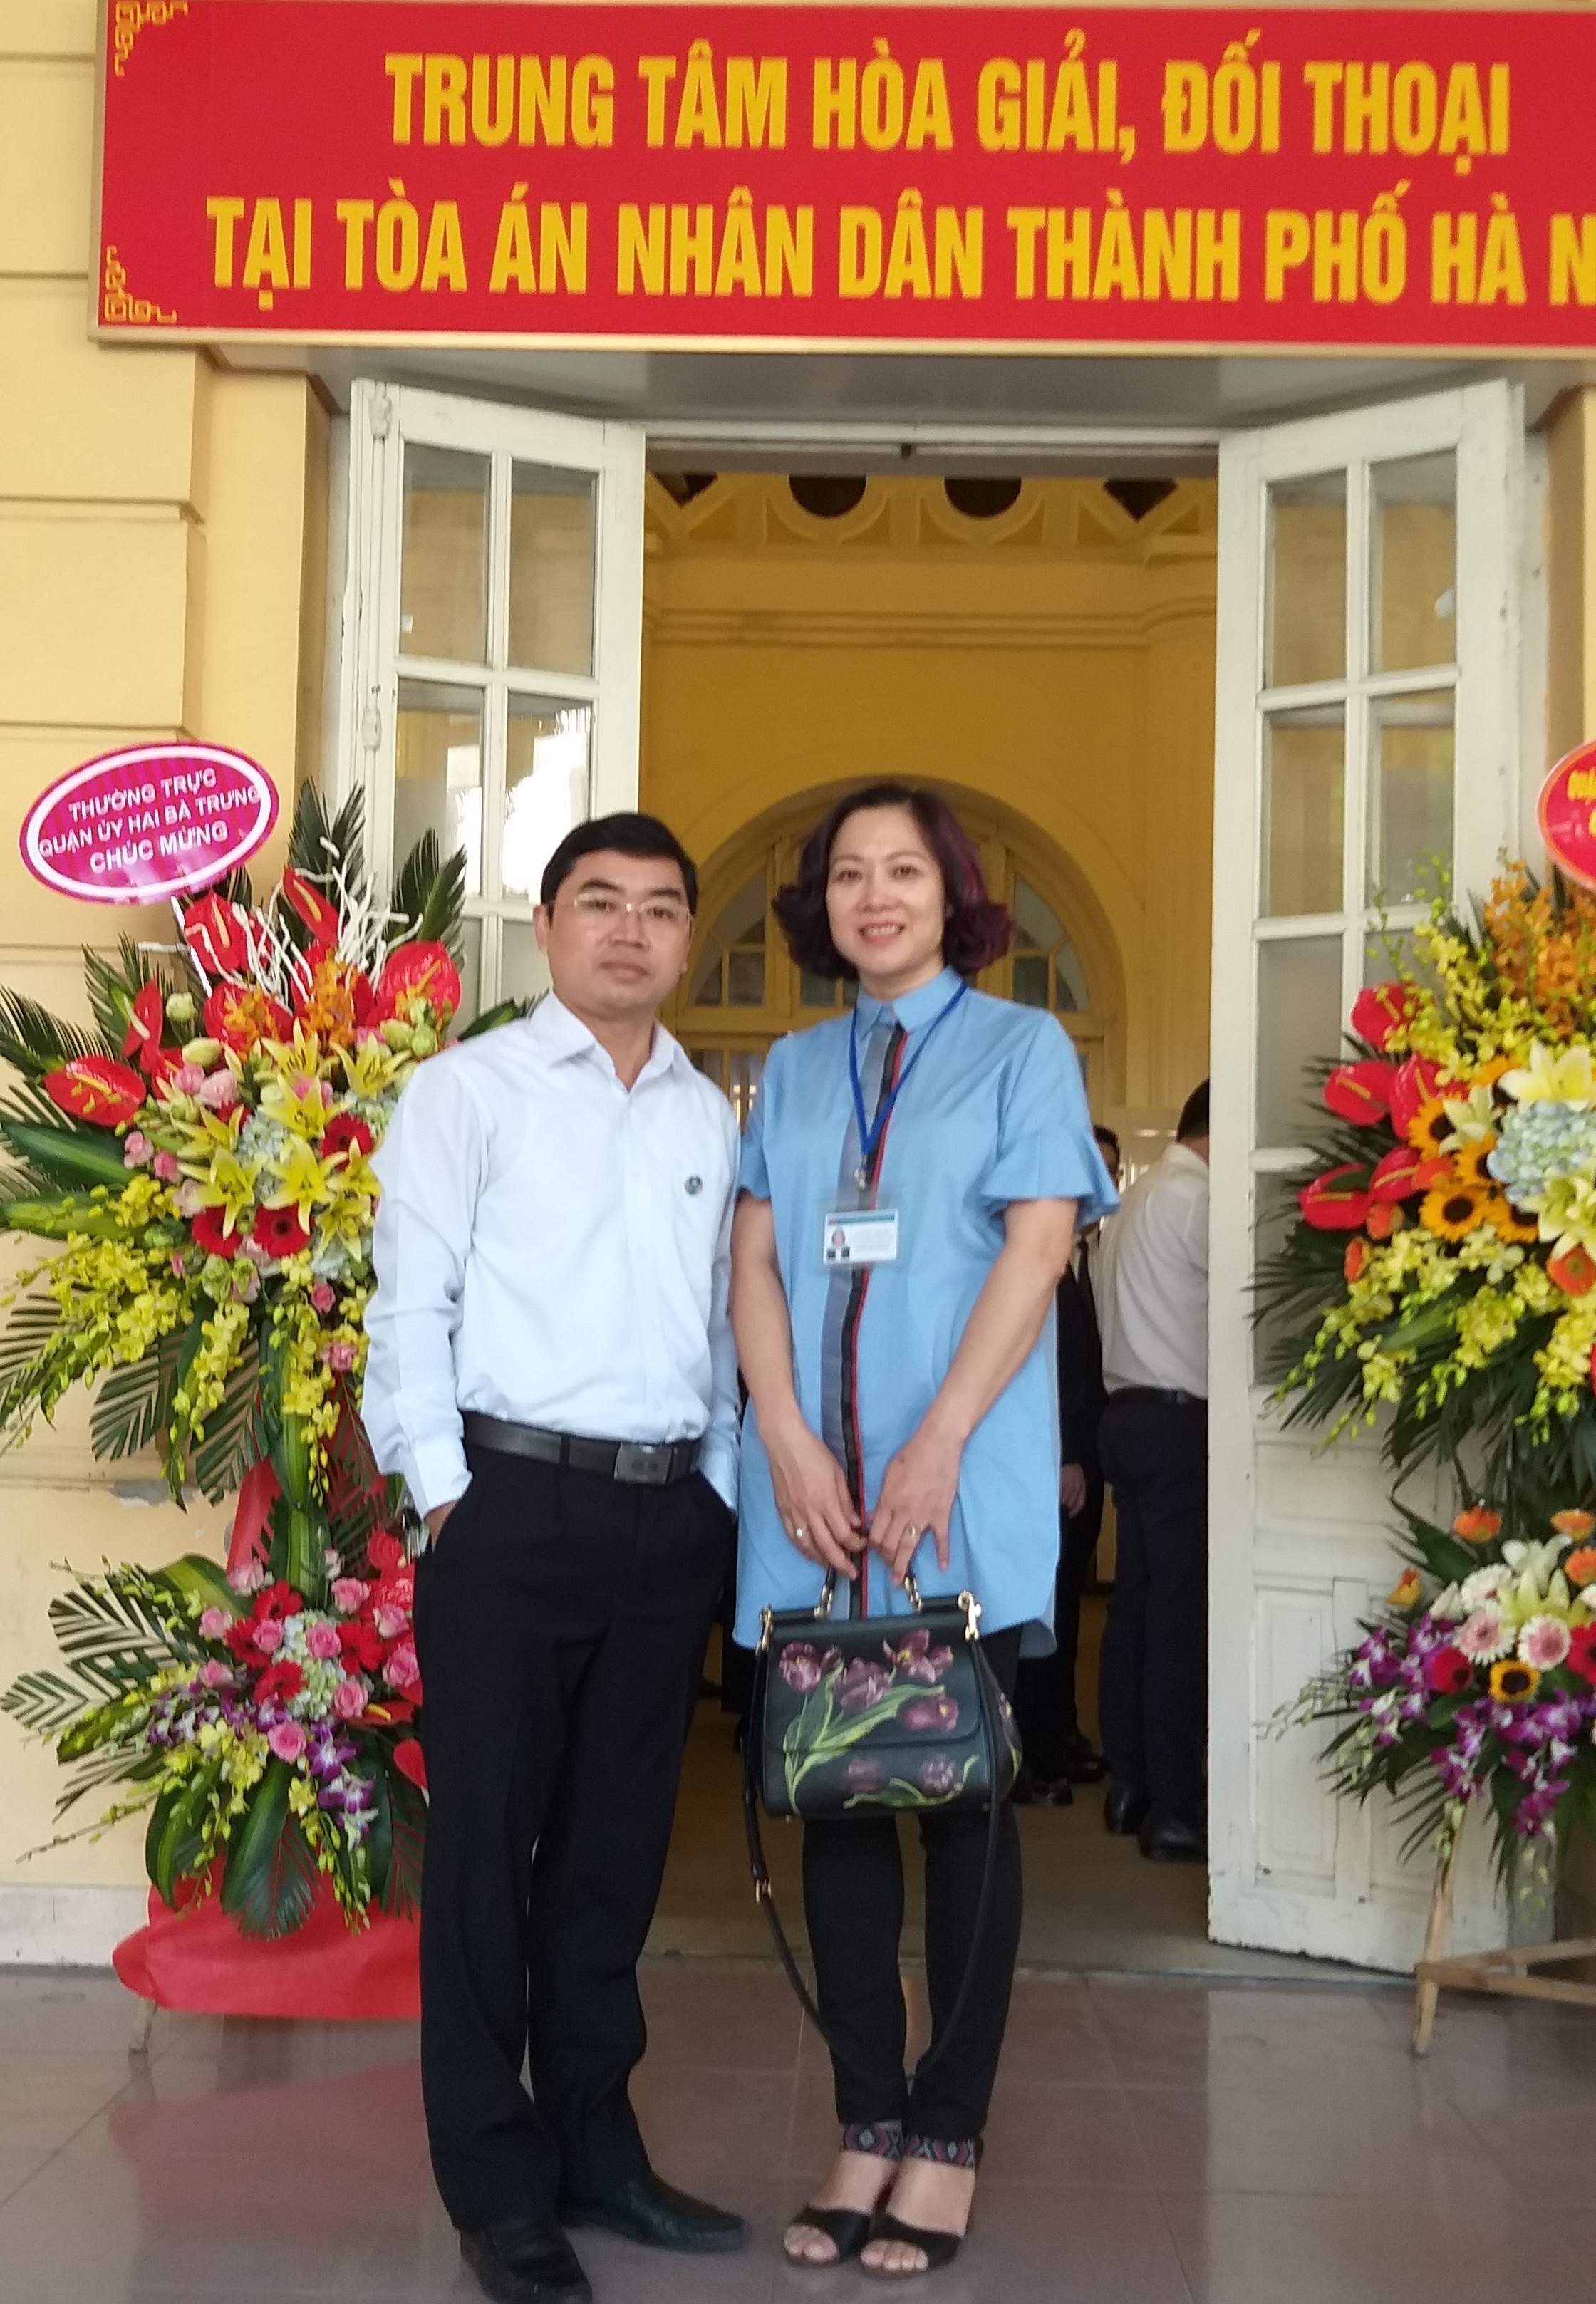 Tham dự khai trương Trung tâm hòa giải tại TAND thành phố Hà Nội